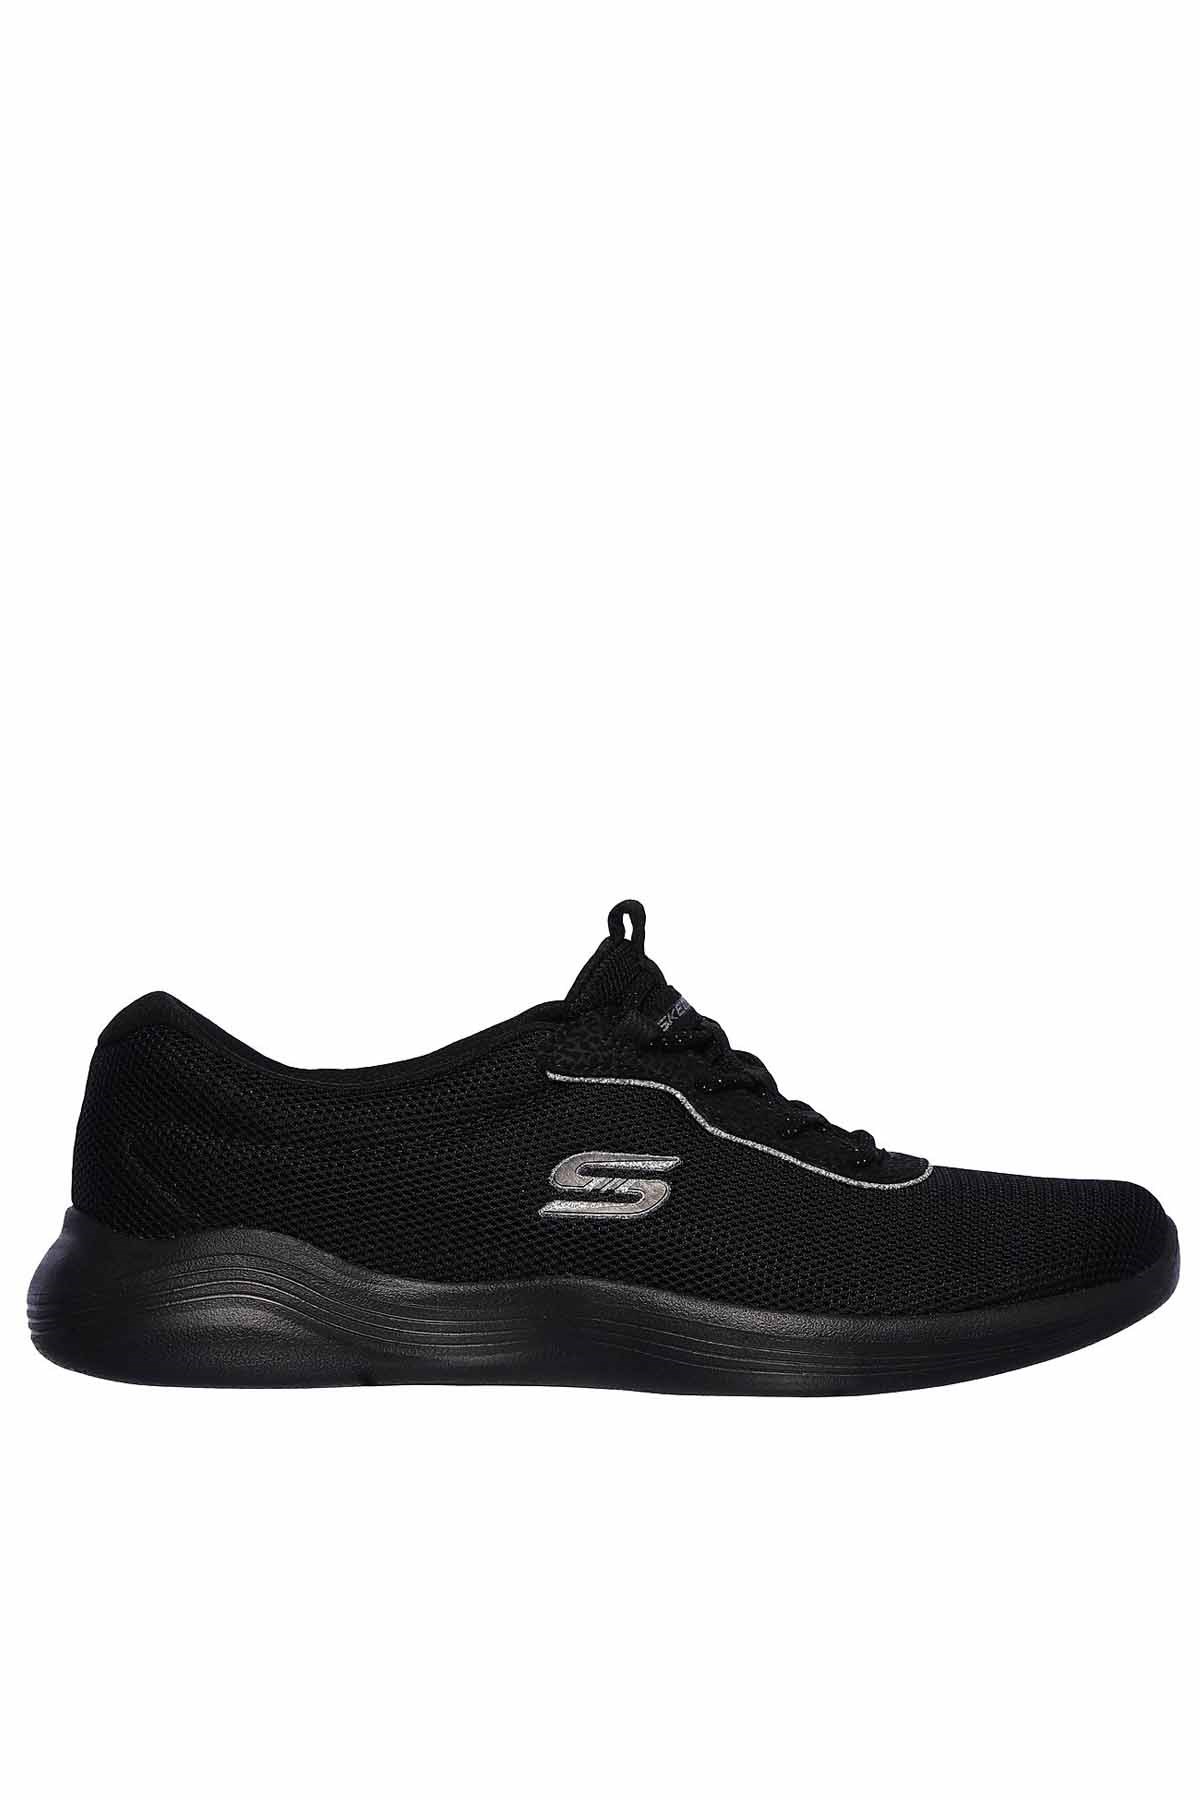 Skechers Envy Kadın Günlük Spor Ayakkabı 23607 BBK SIYAH